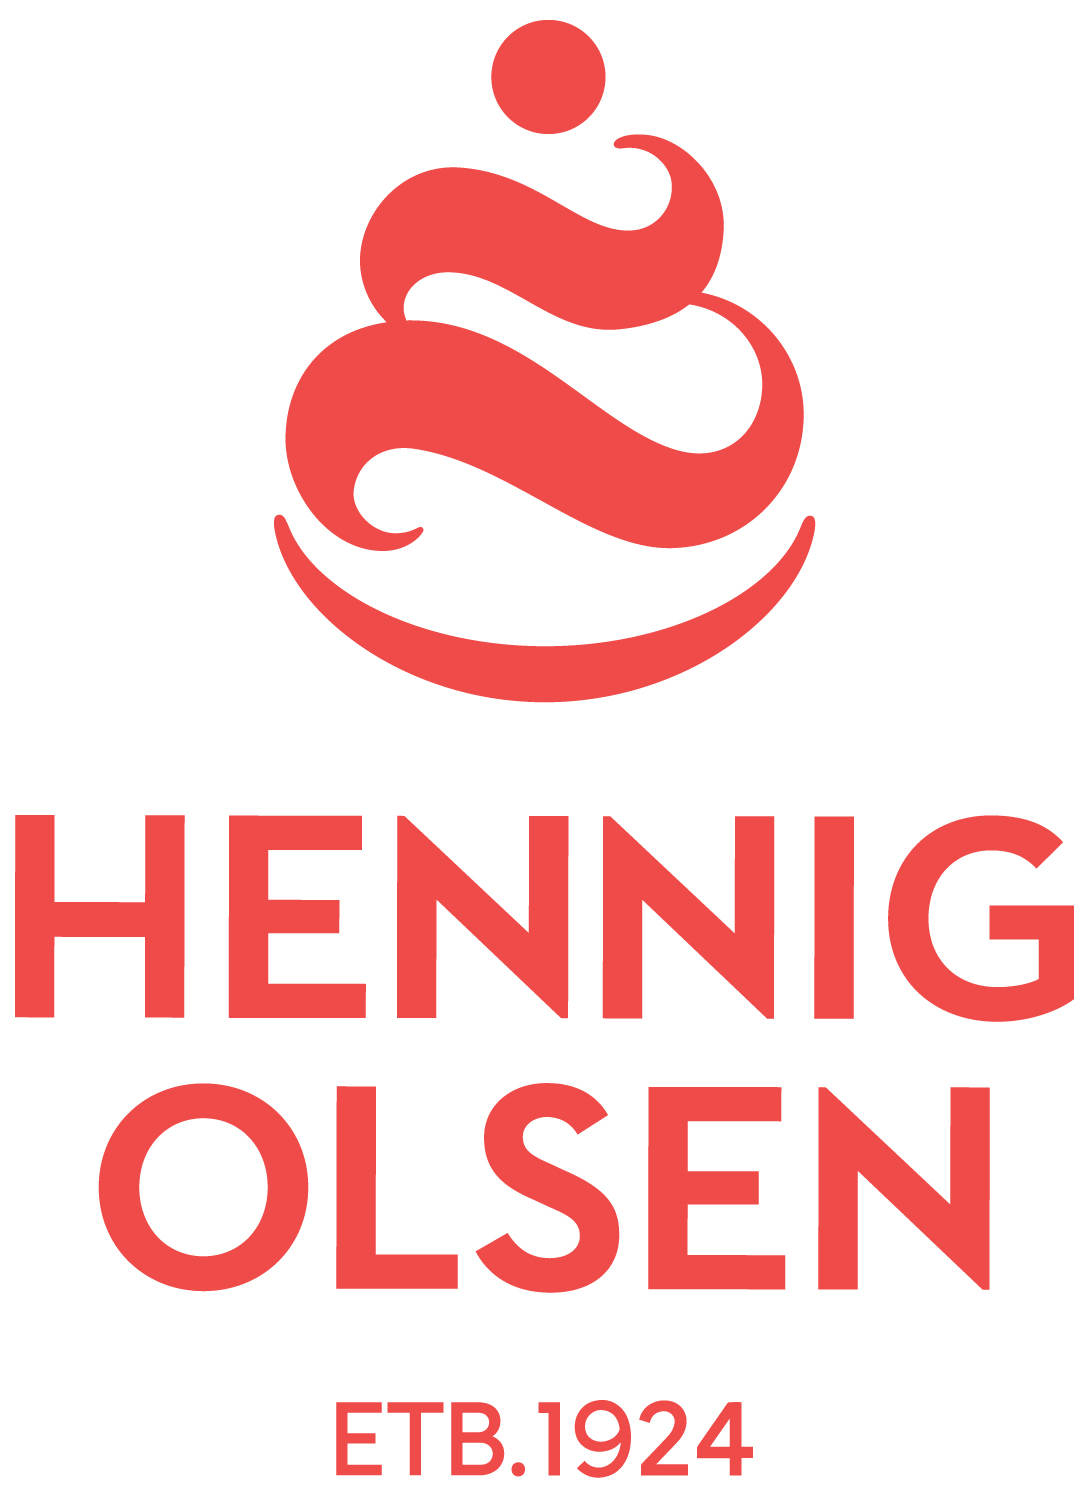 Hennig-Olsen IS AS